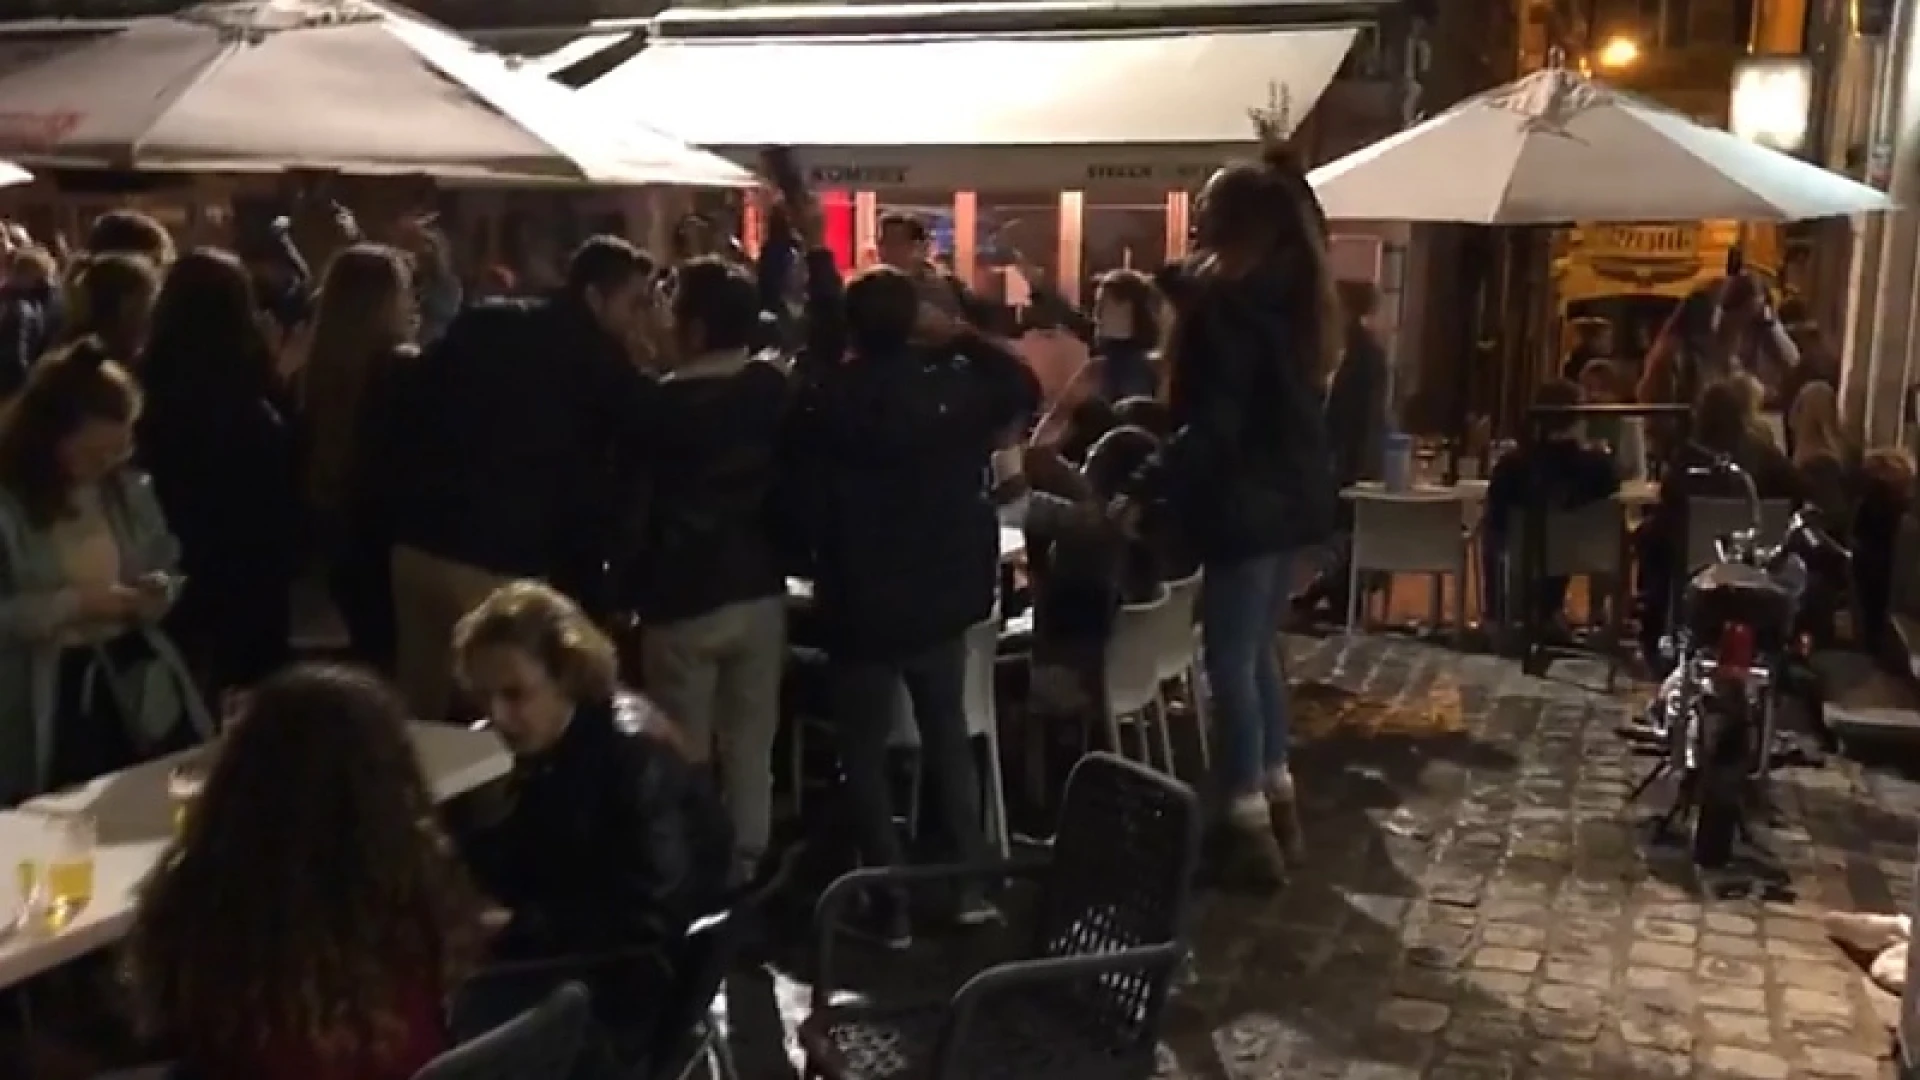 Luid zingen en schermutselingen op Leuvense Oude Markt tijdens laatste café-avond tot 1 uur